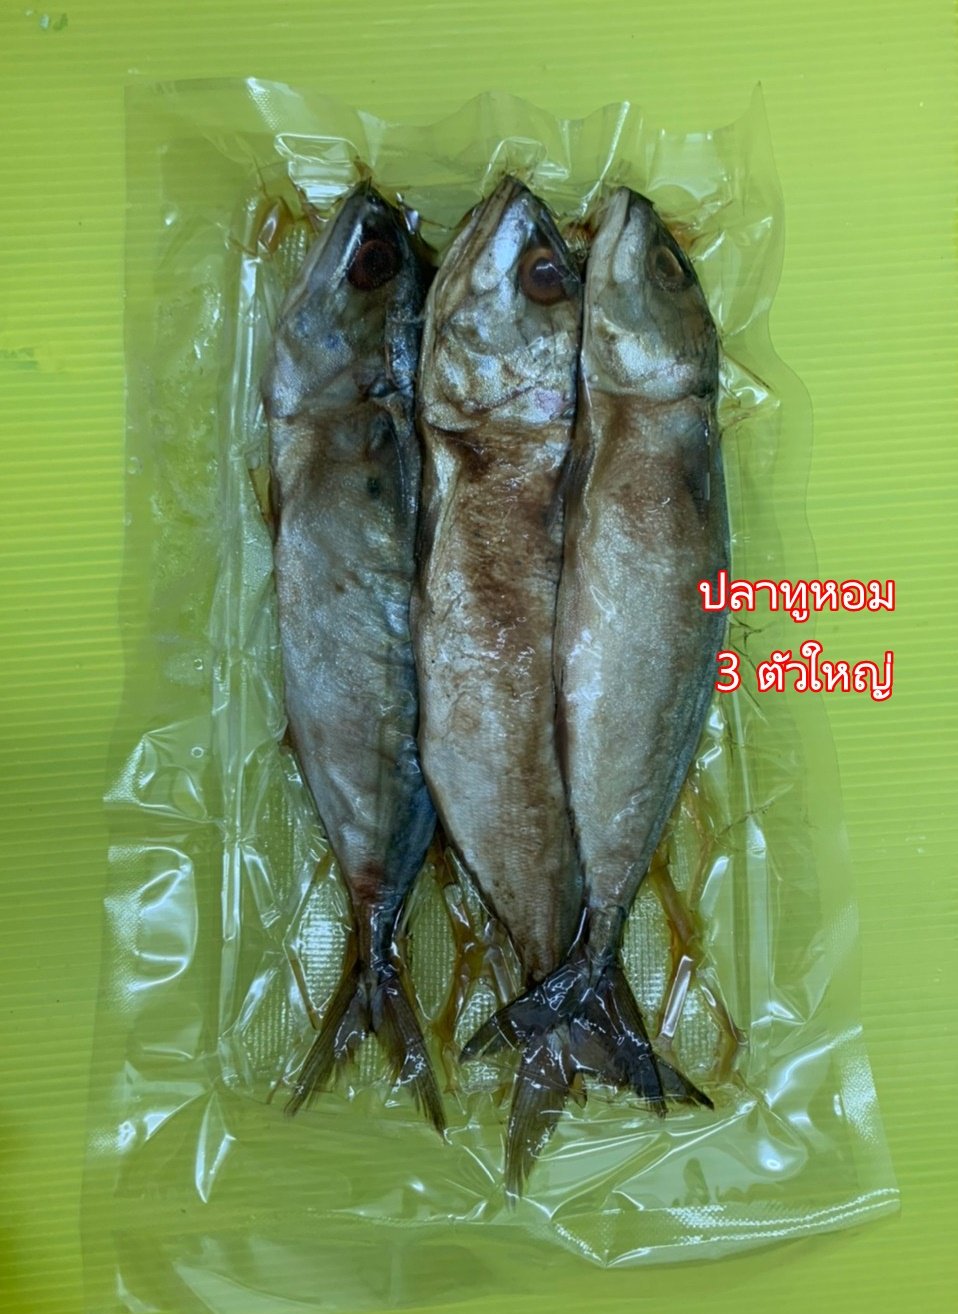 ปลาทูหอม 3 ตัว (แพคใหญ่)